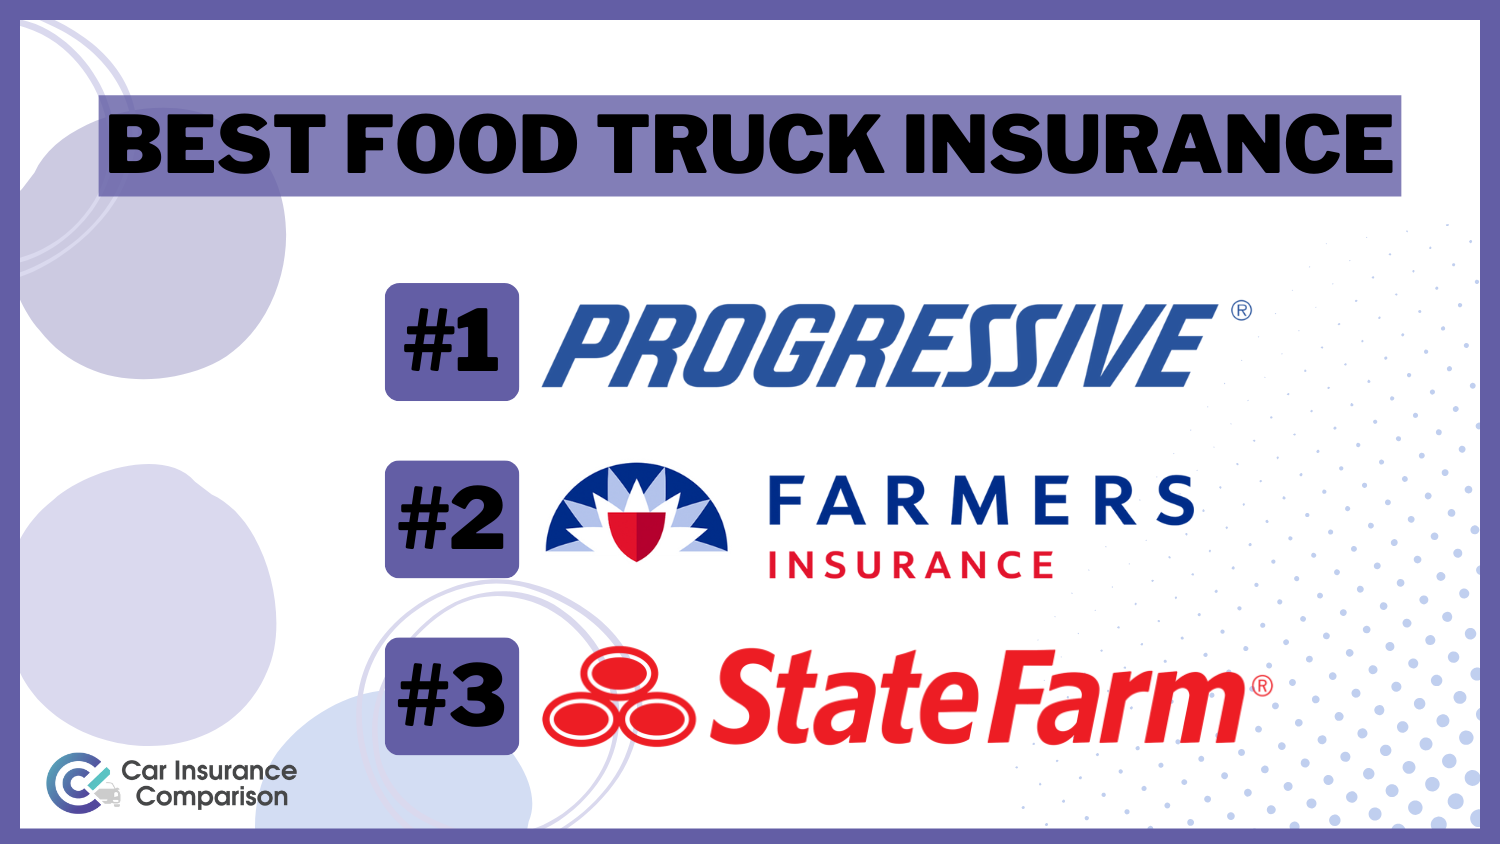 Progressive, Farmers, State Farm: Best Food Truck Insurance